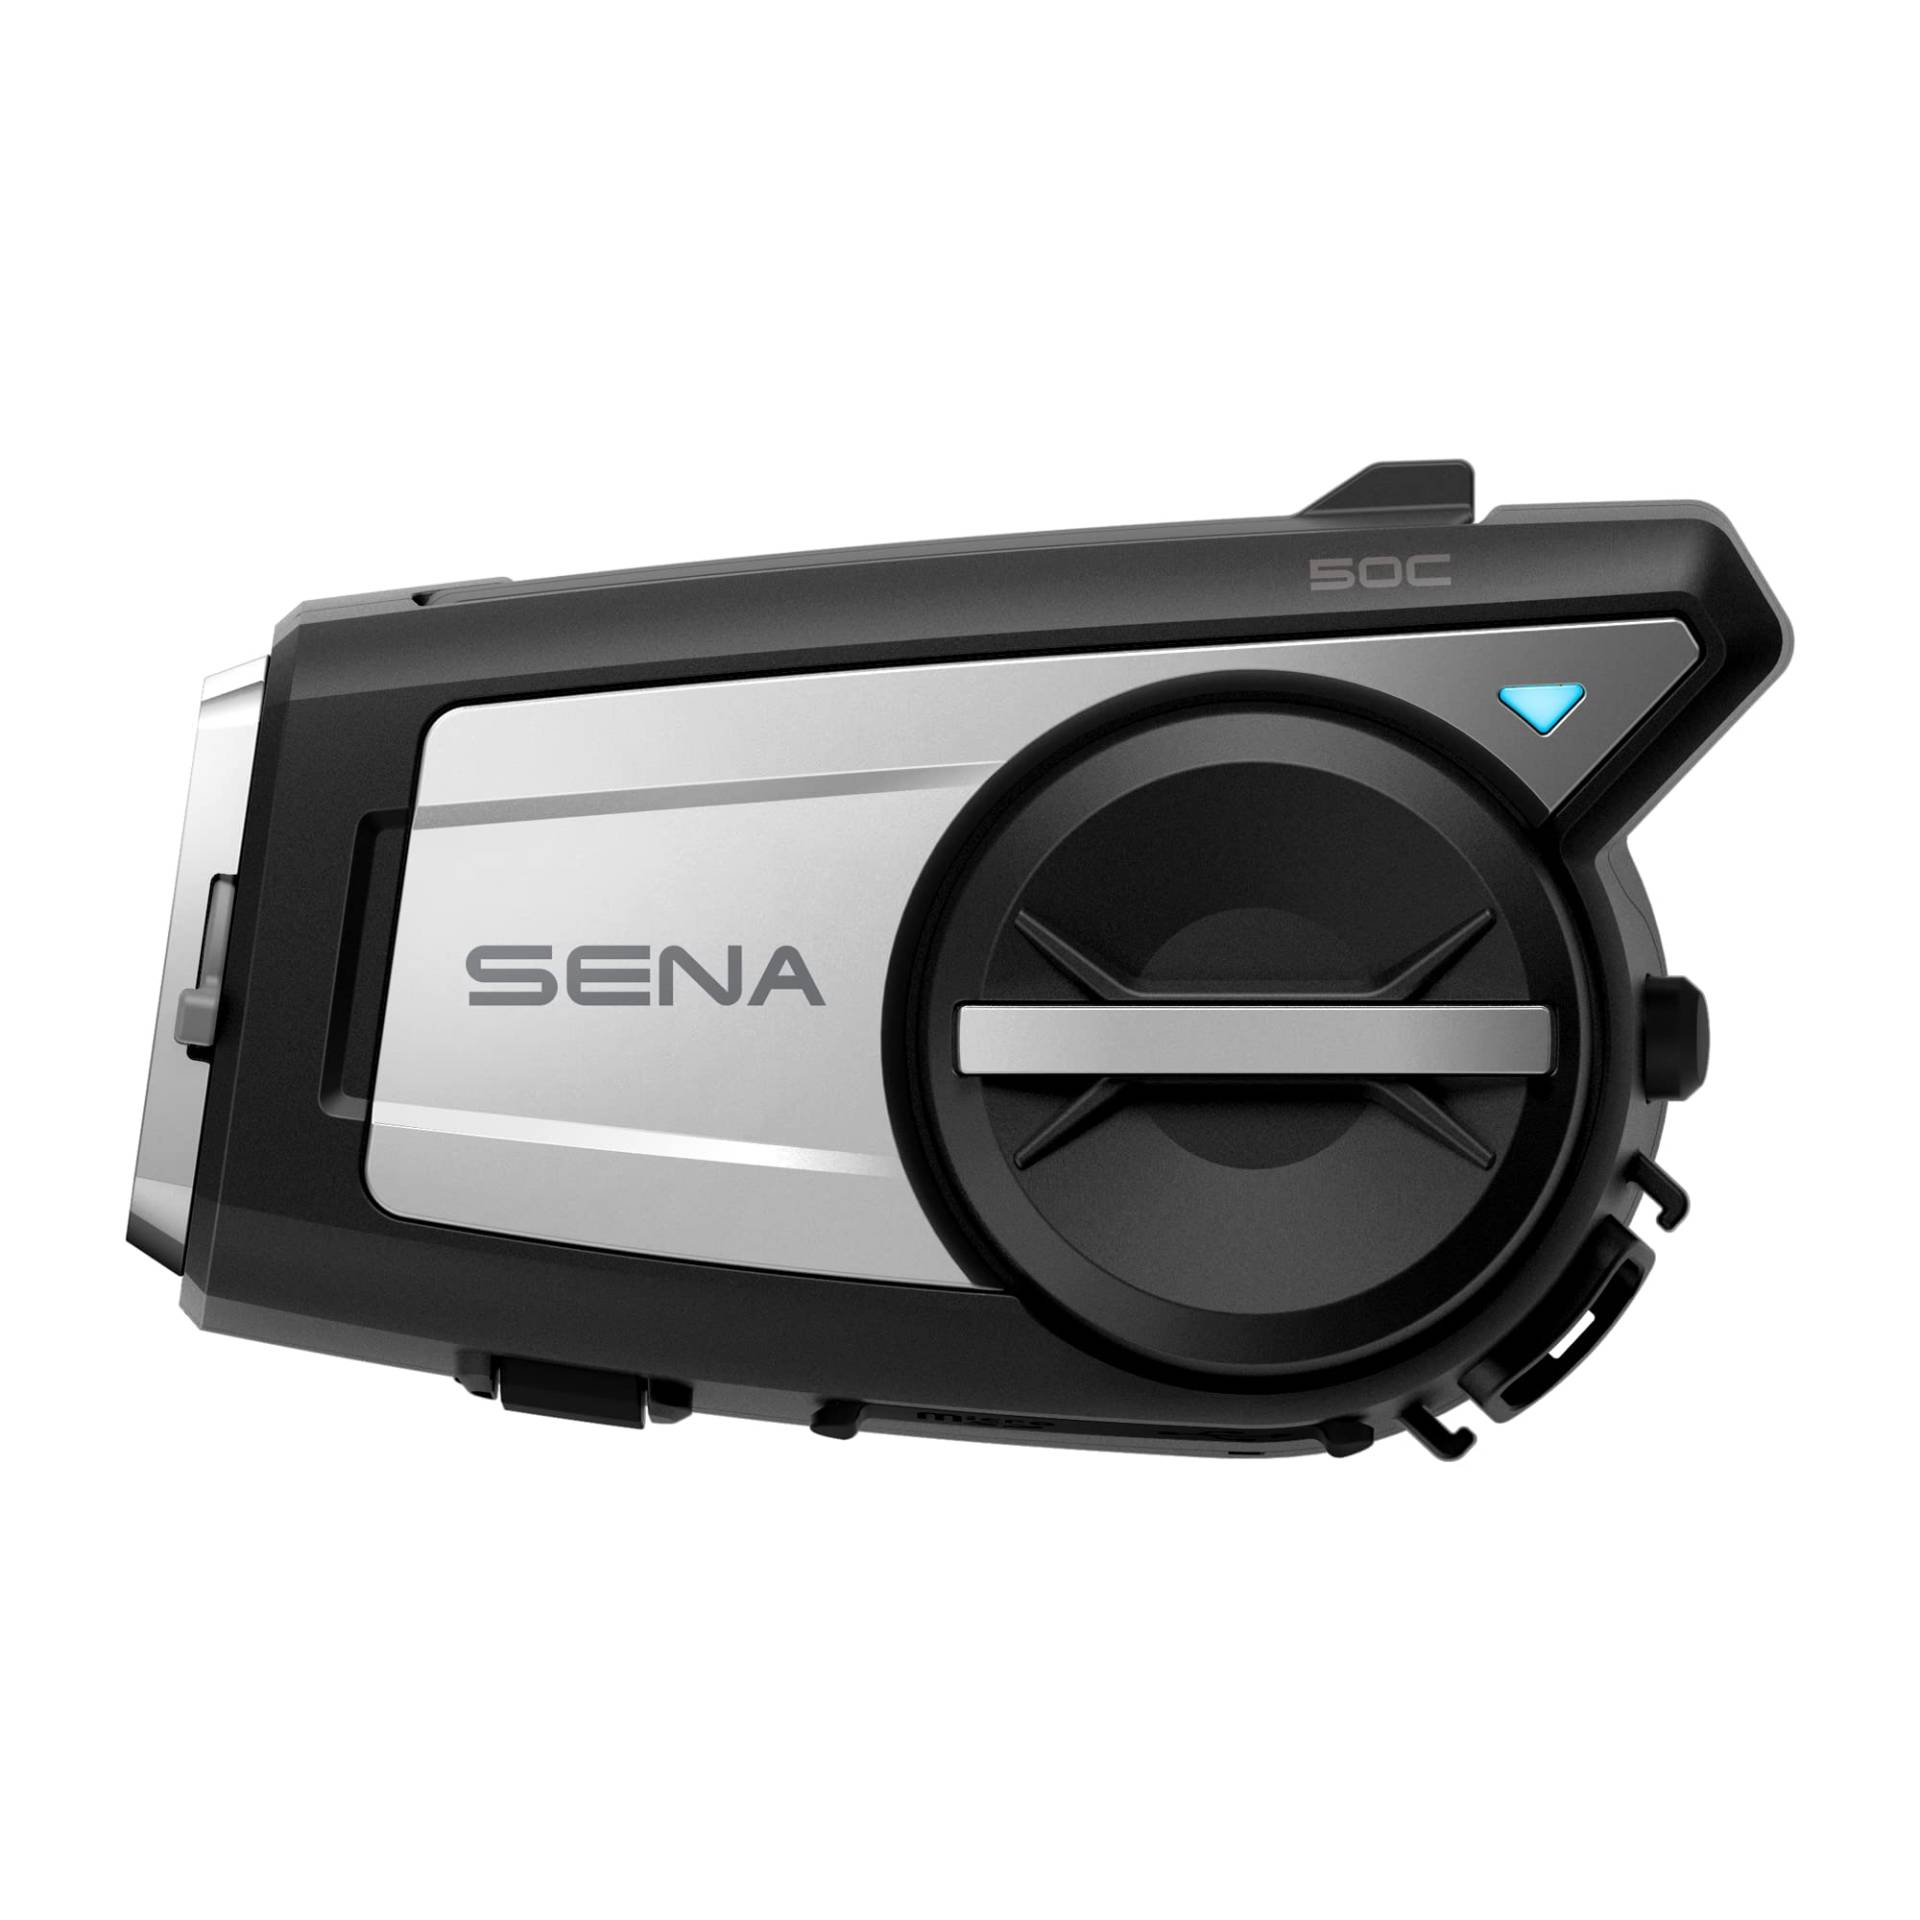 Sena 50C Motorrad Kommunikations & 4K Kamerasystem mit Sound by Harman Kardon und Premium Mikrofon & Lautsprechern sowie integrierter Mesh Gegensprechanlage, Schwarz von Sena